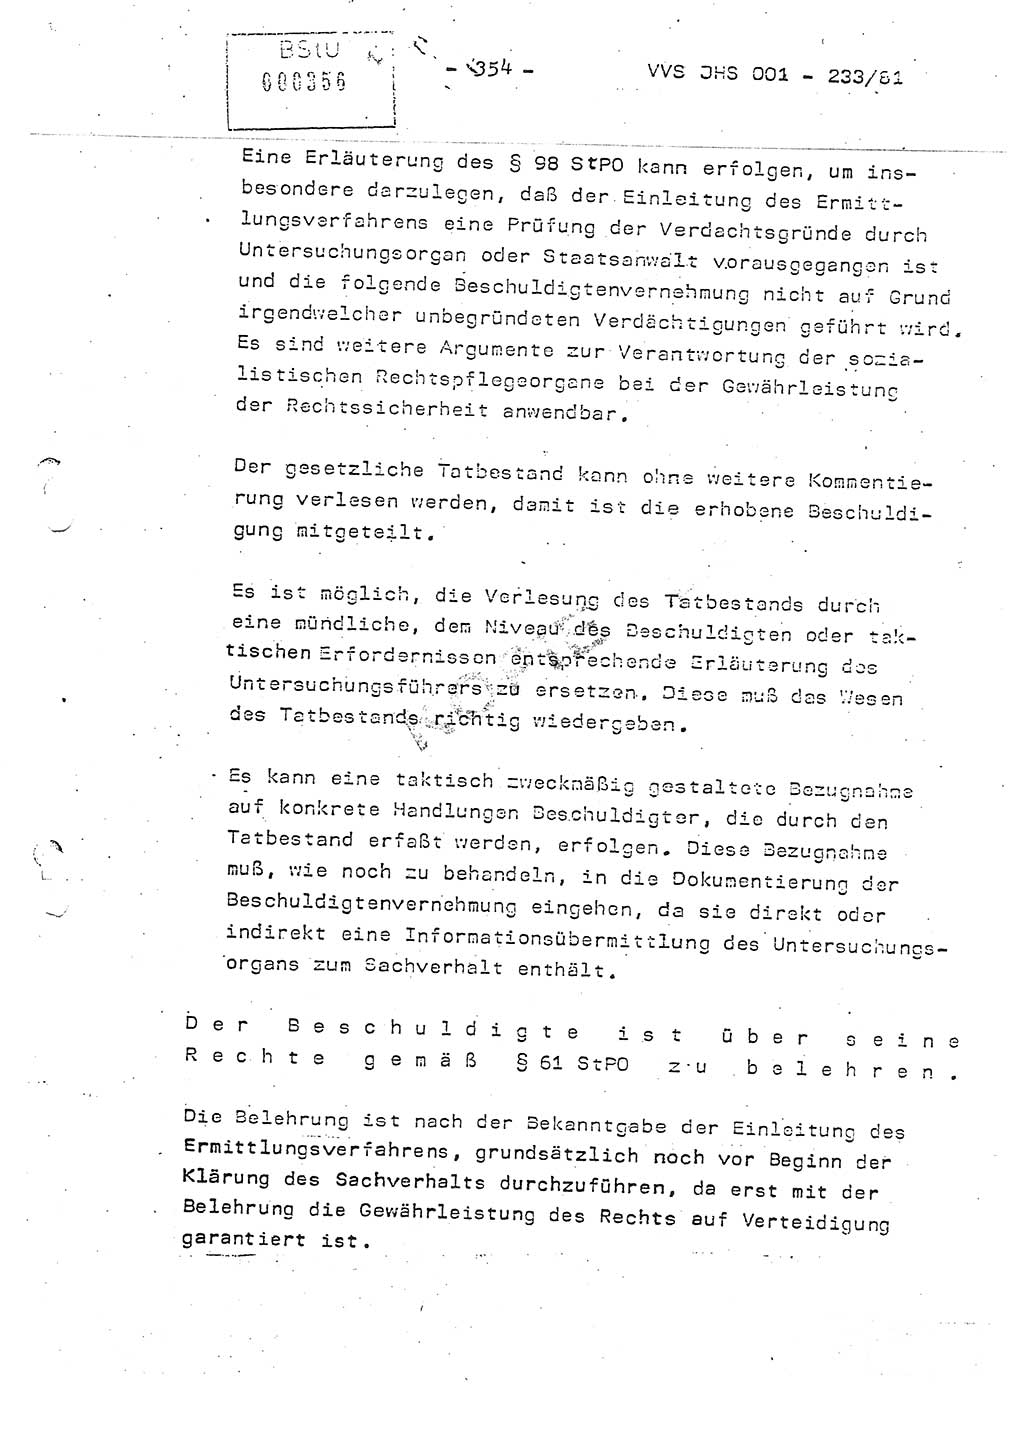 Dissertation Oberstleutnant Horst Zank (JHS), Oberstleutnant Dr. Karl-Heinz Knoblauch (JHS), Oberstleutnant Gustav-Adolf Kowalewski (HA Ⅸ), Oberstleutnant Wolfgang Plötner (HA Ⅸ), Ministerium für Staatssicherheit (MfS) [Deutsche Demokratische Republik (DDR)], Juristische Hochschule (JHS), Vertrauliche Verschlußsache (VVS) o001-233/81, Potsdam 1981, Blatt 354 (Diss. MfS DDR JHS VVS o001-233/81 1981, Bl. 354)